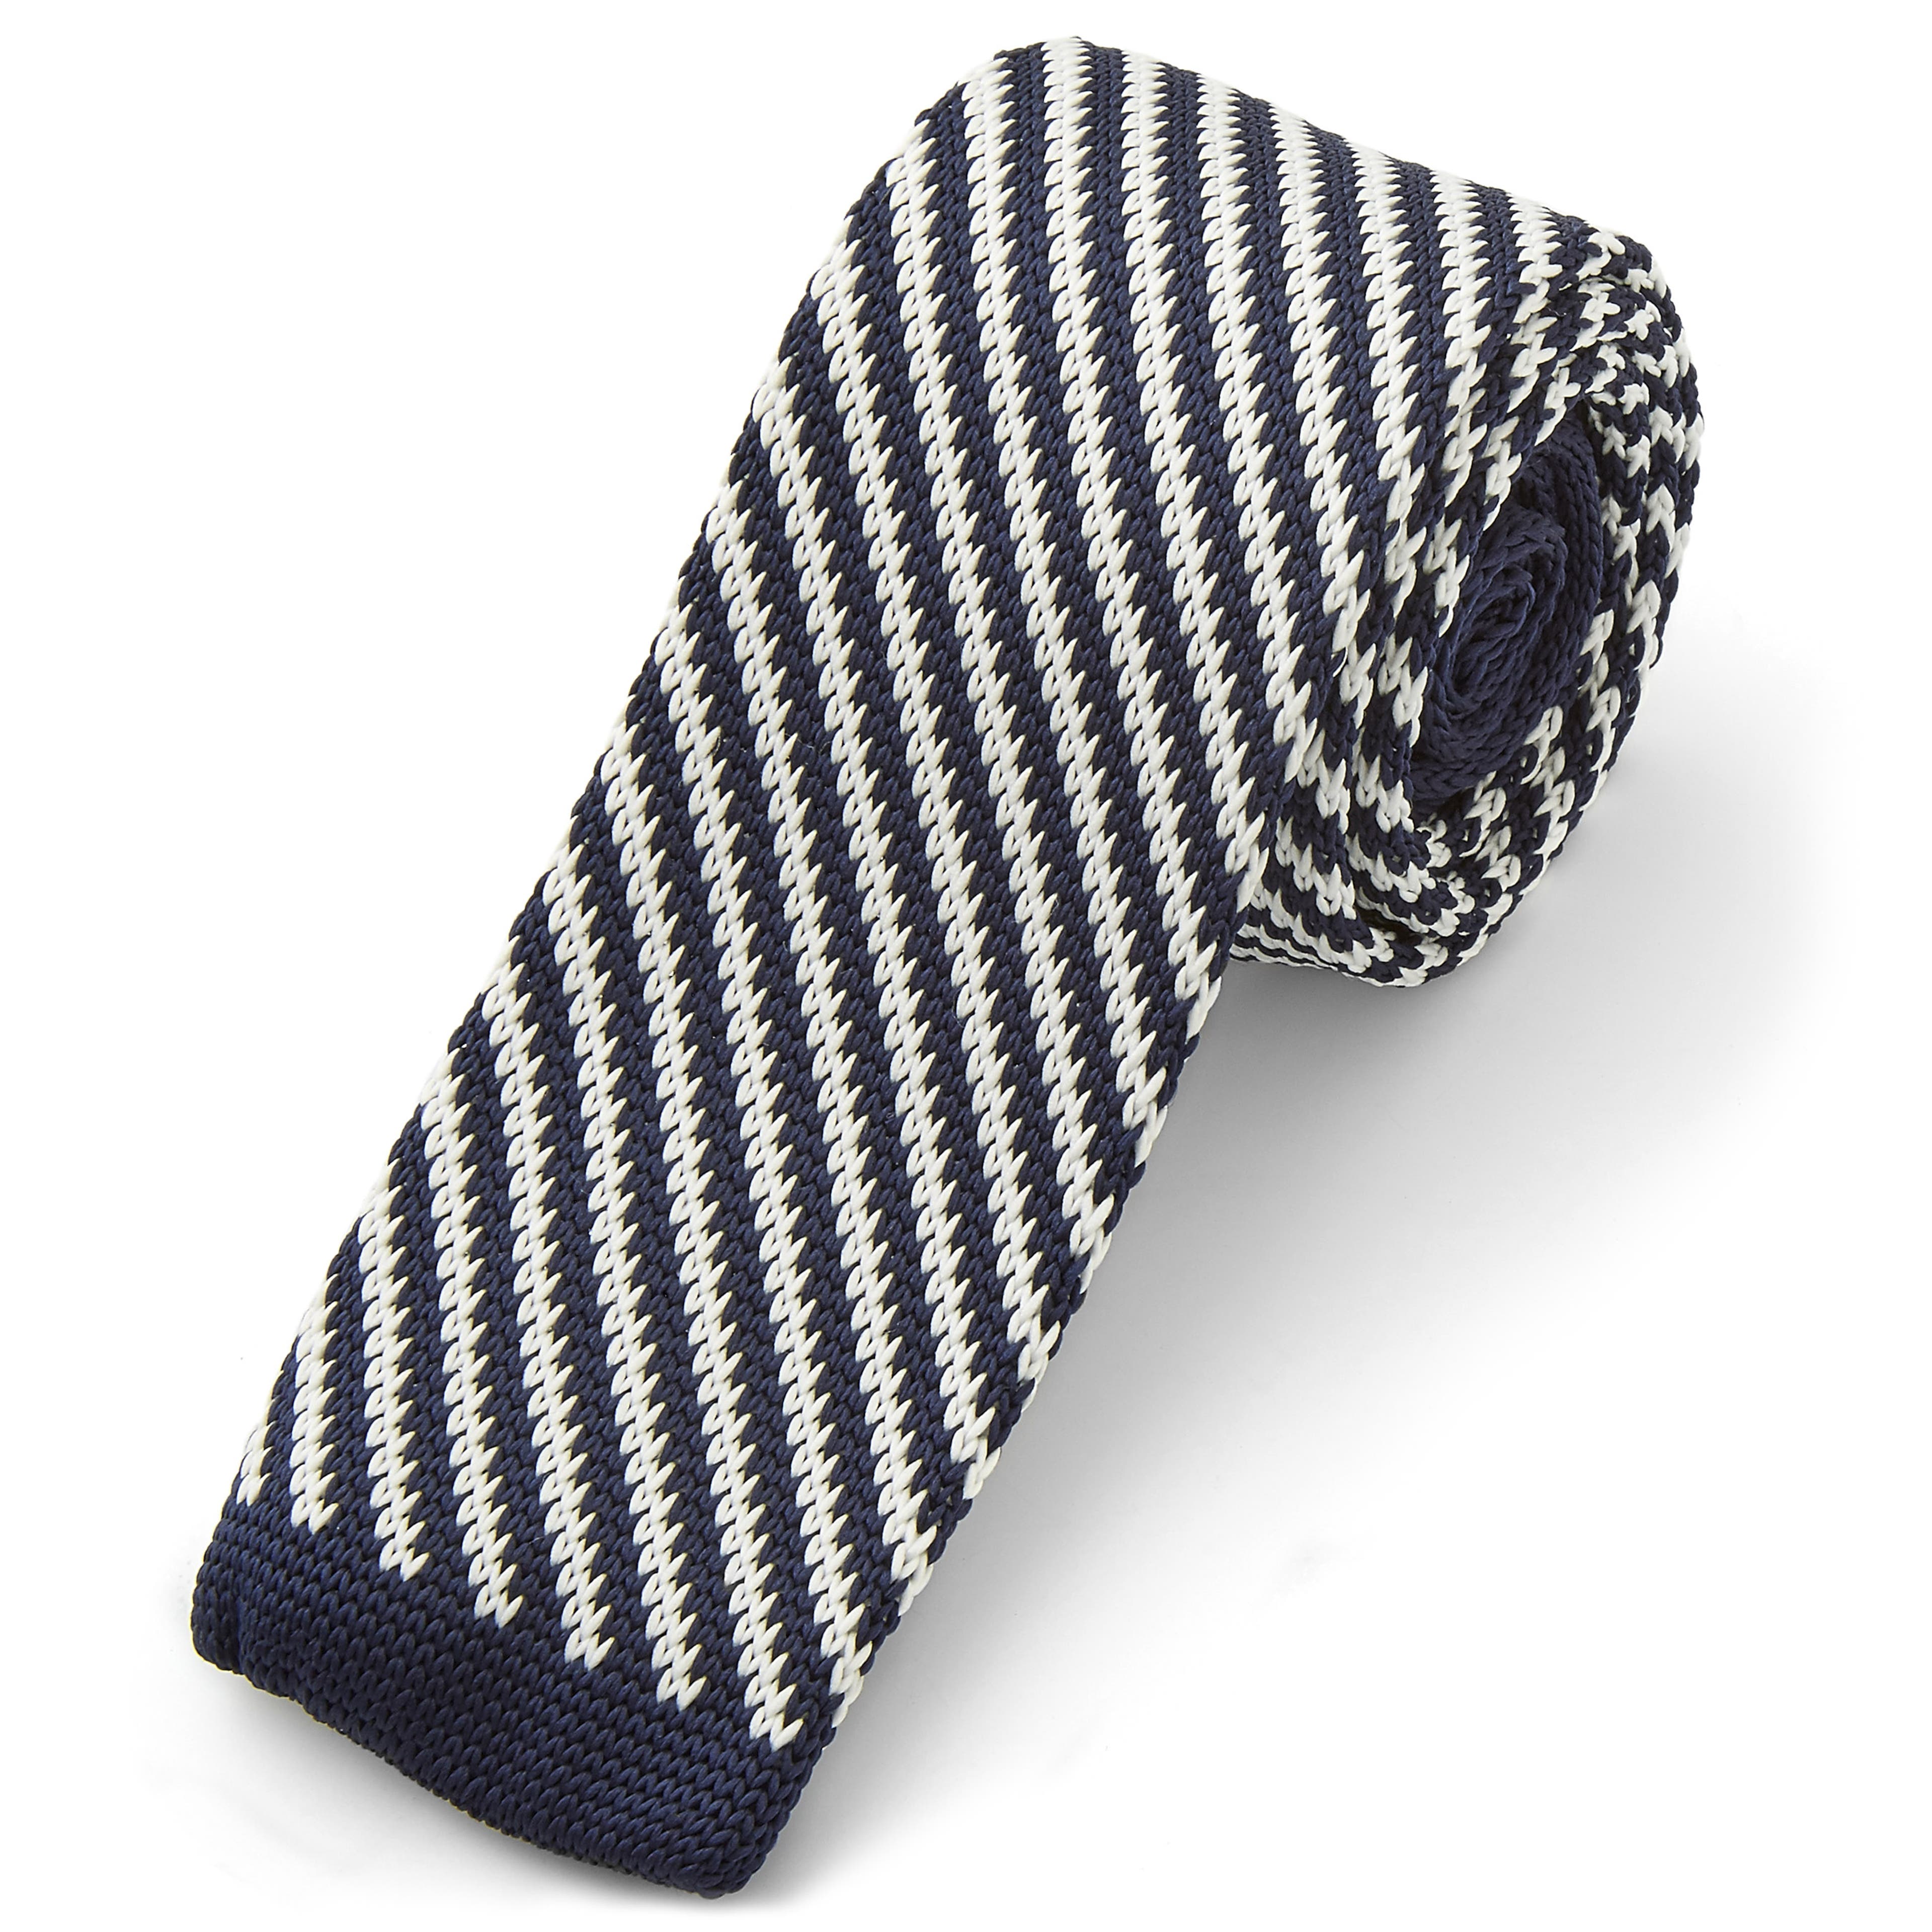 Kék-fehér átlós csíkos kötött nyakkendő